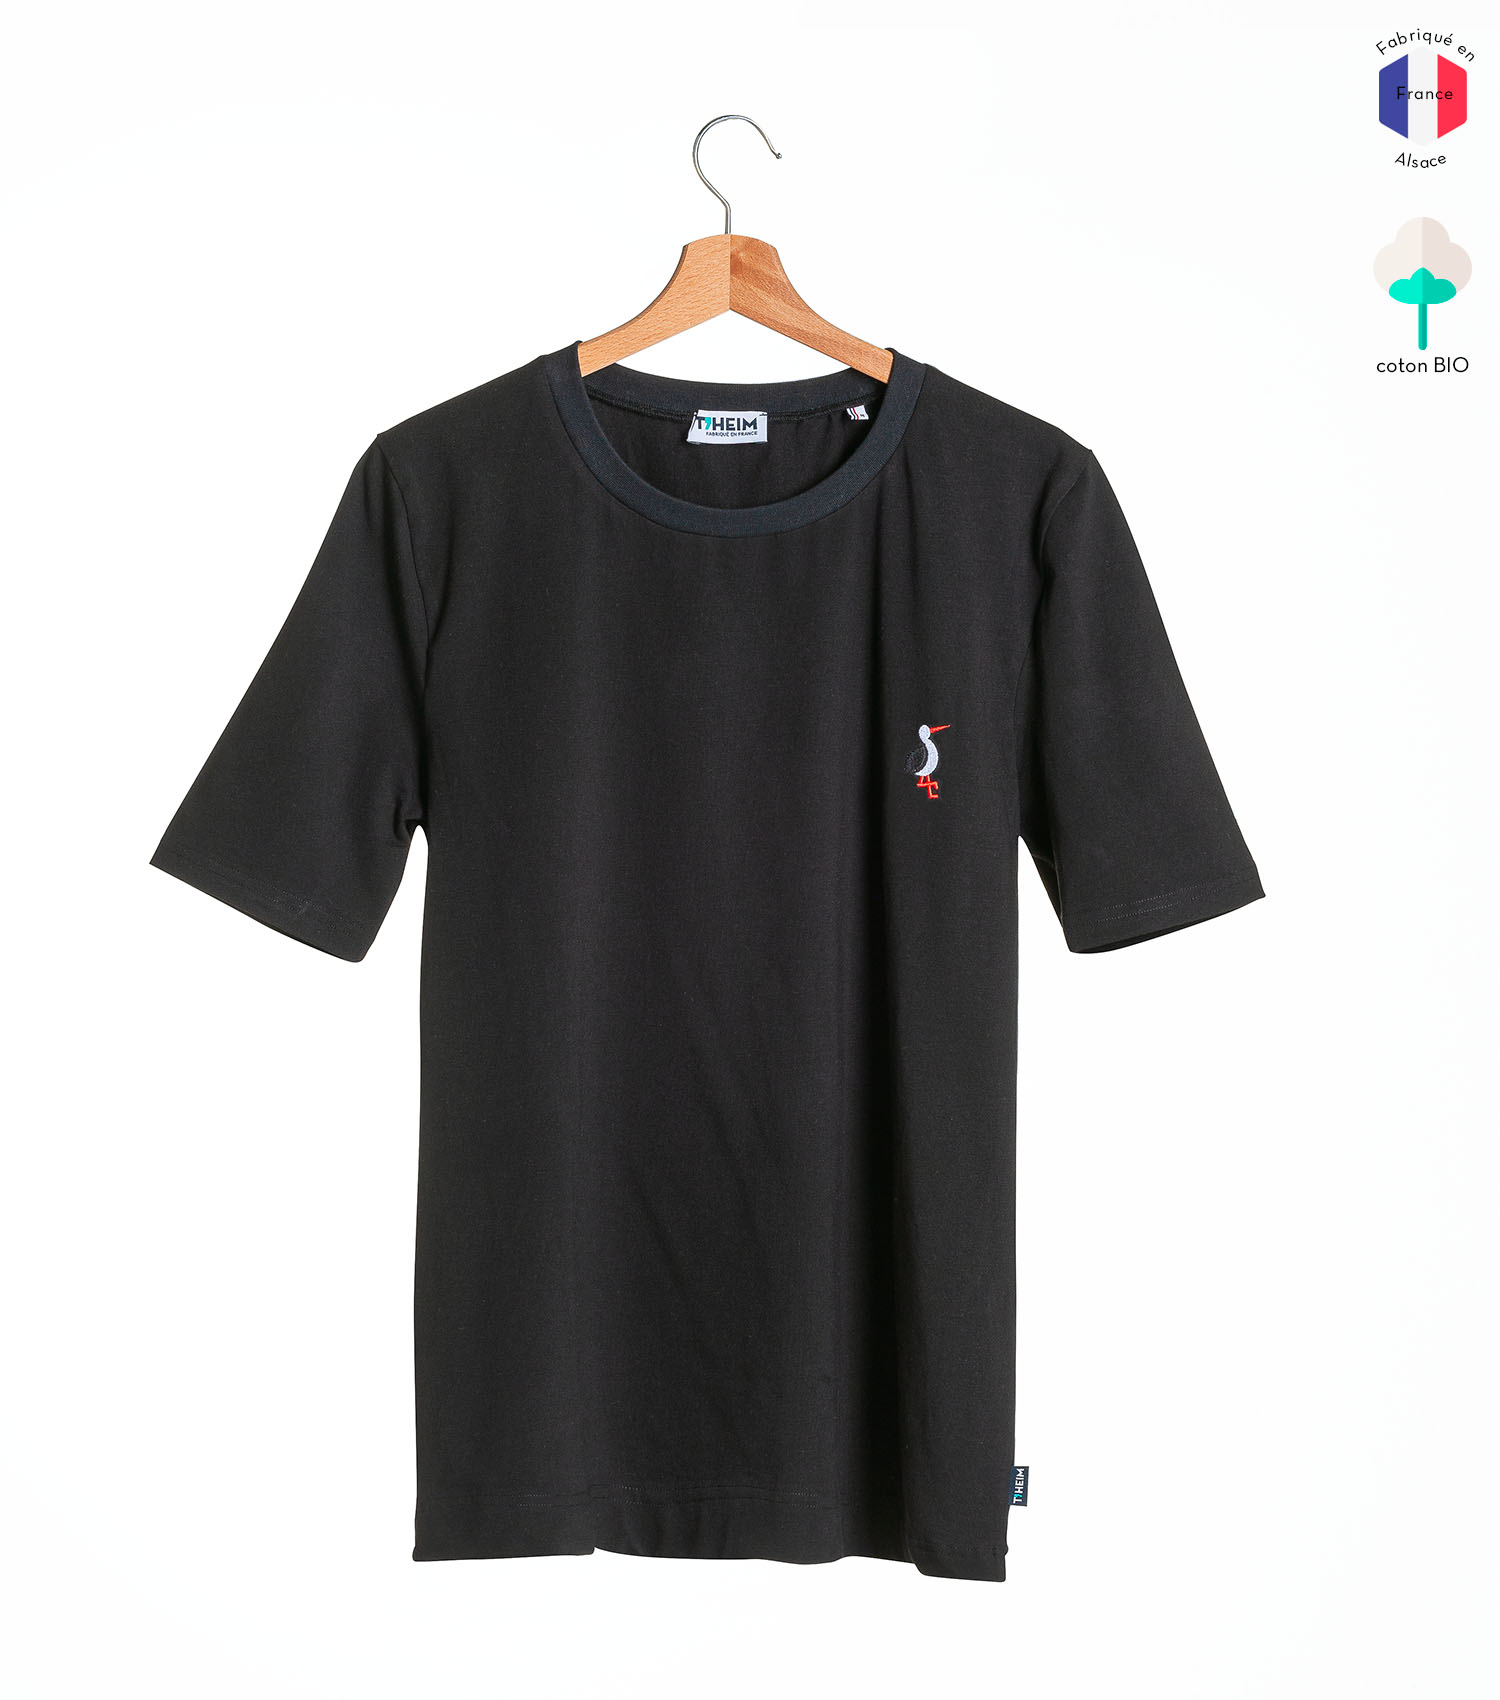 theim-tshirt-mixte-noir-broderie-cigogne-4-1500x1700